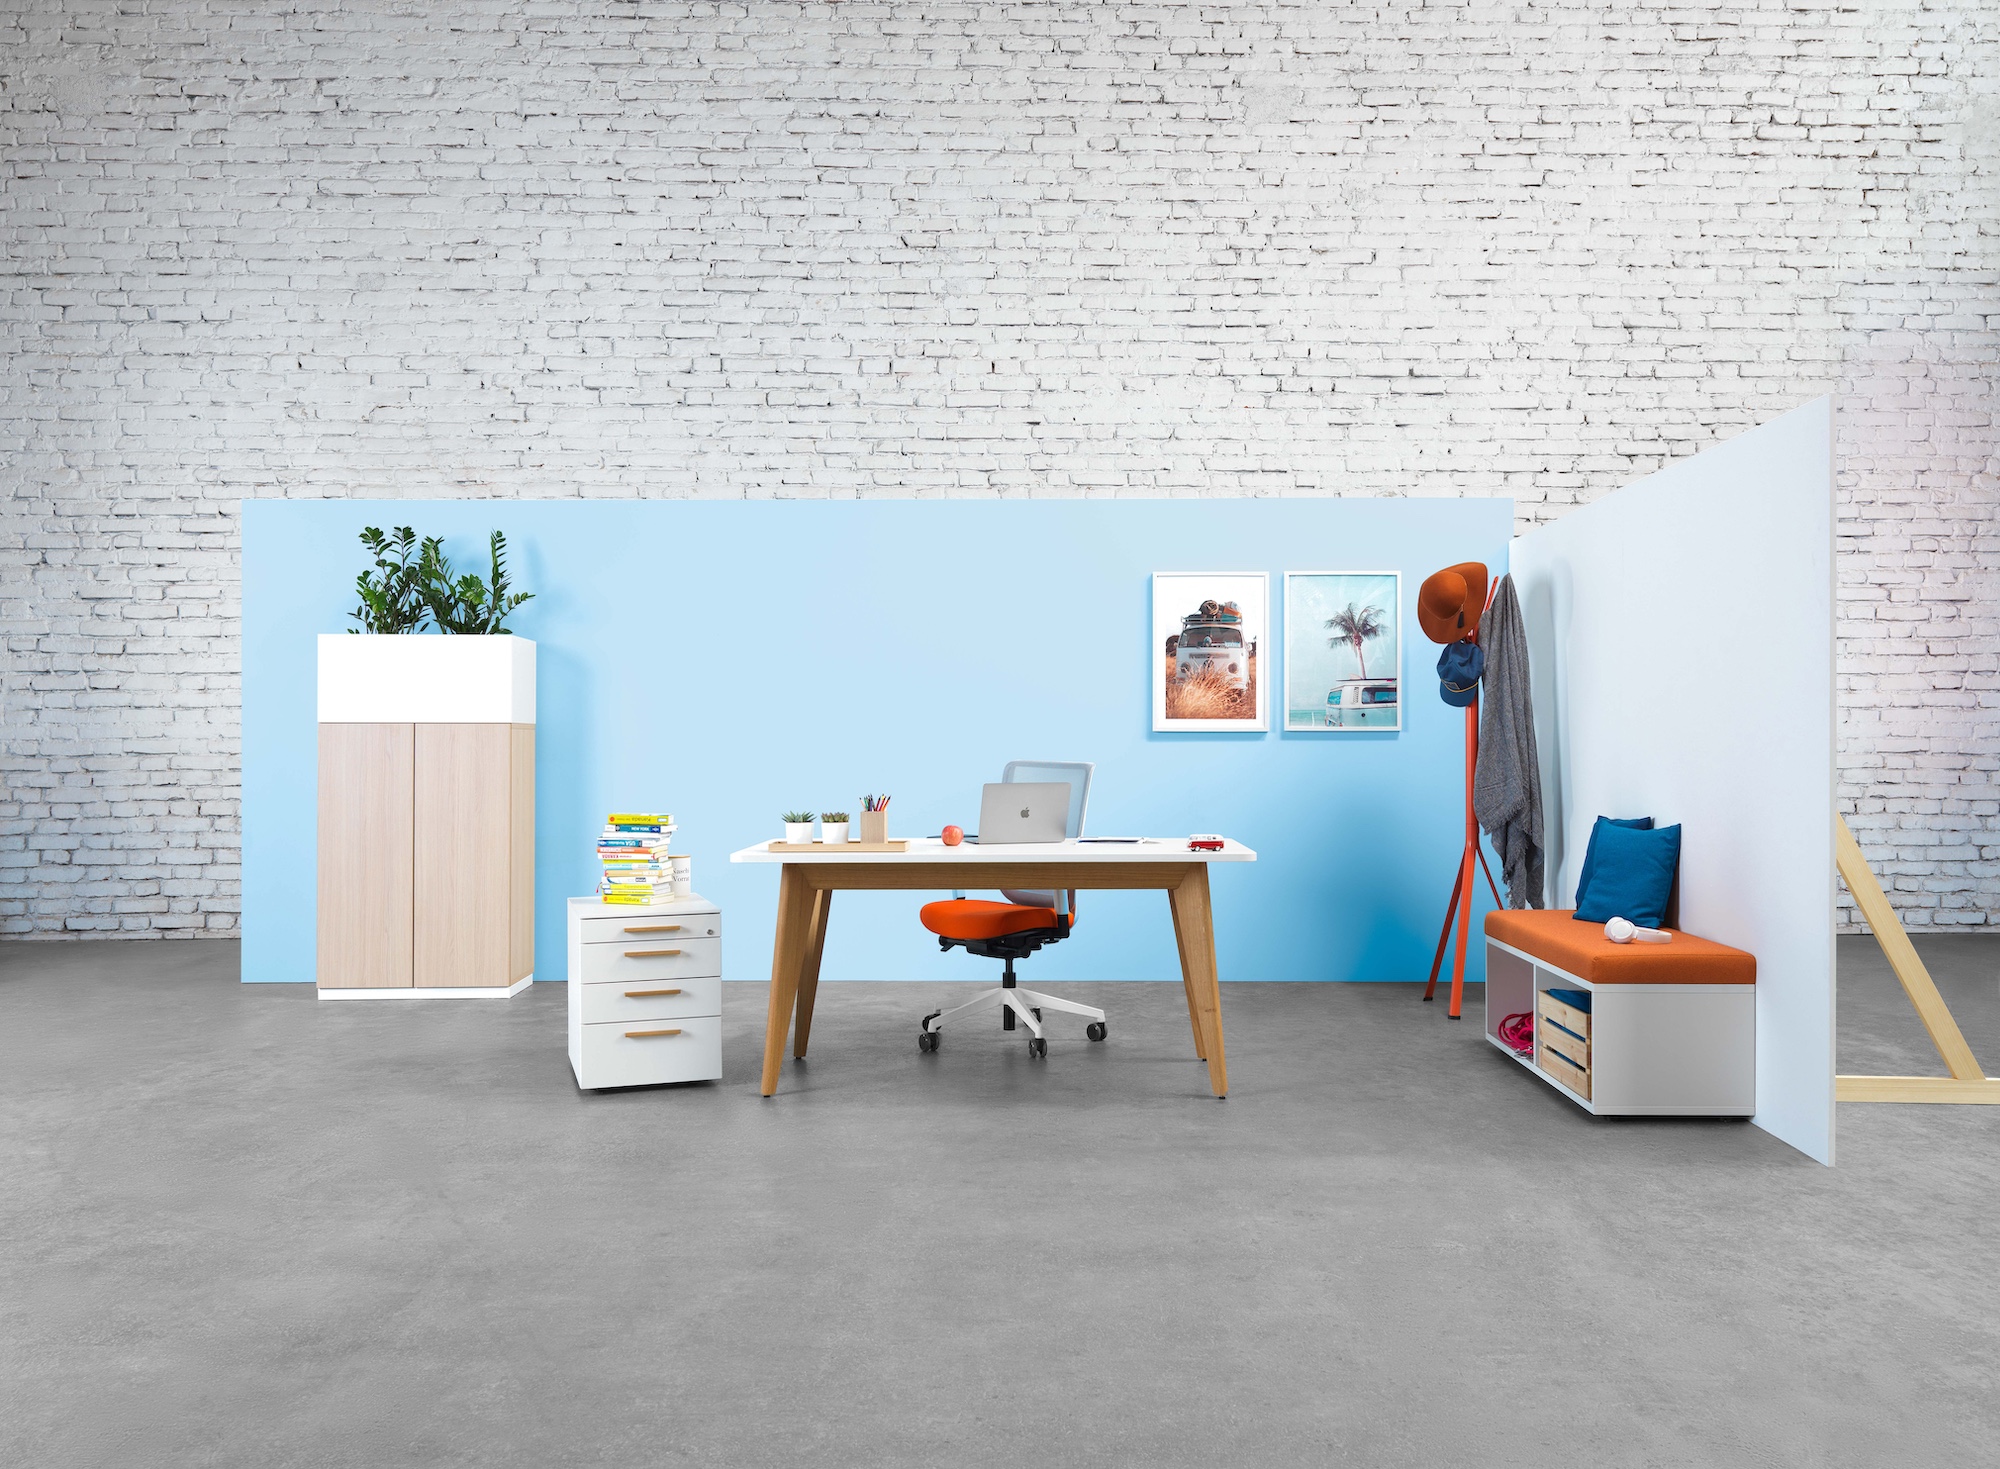 bildstadt – Hali Imagefotografie hellblaue Wand mit Schreibtisch Kasten und Garderobe